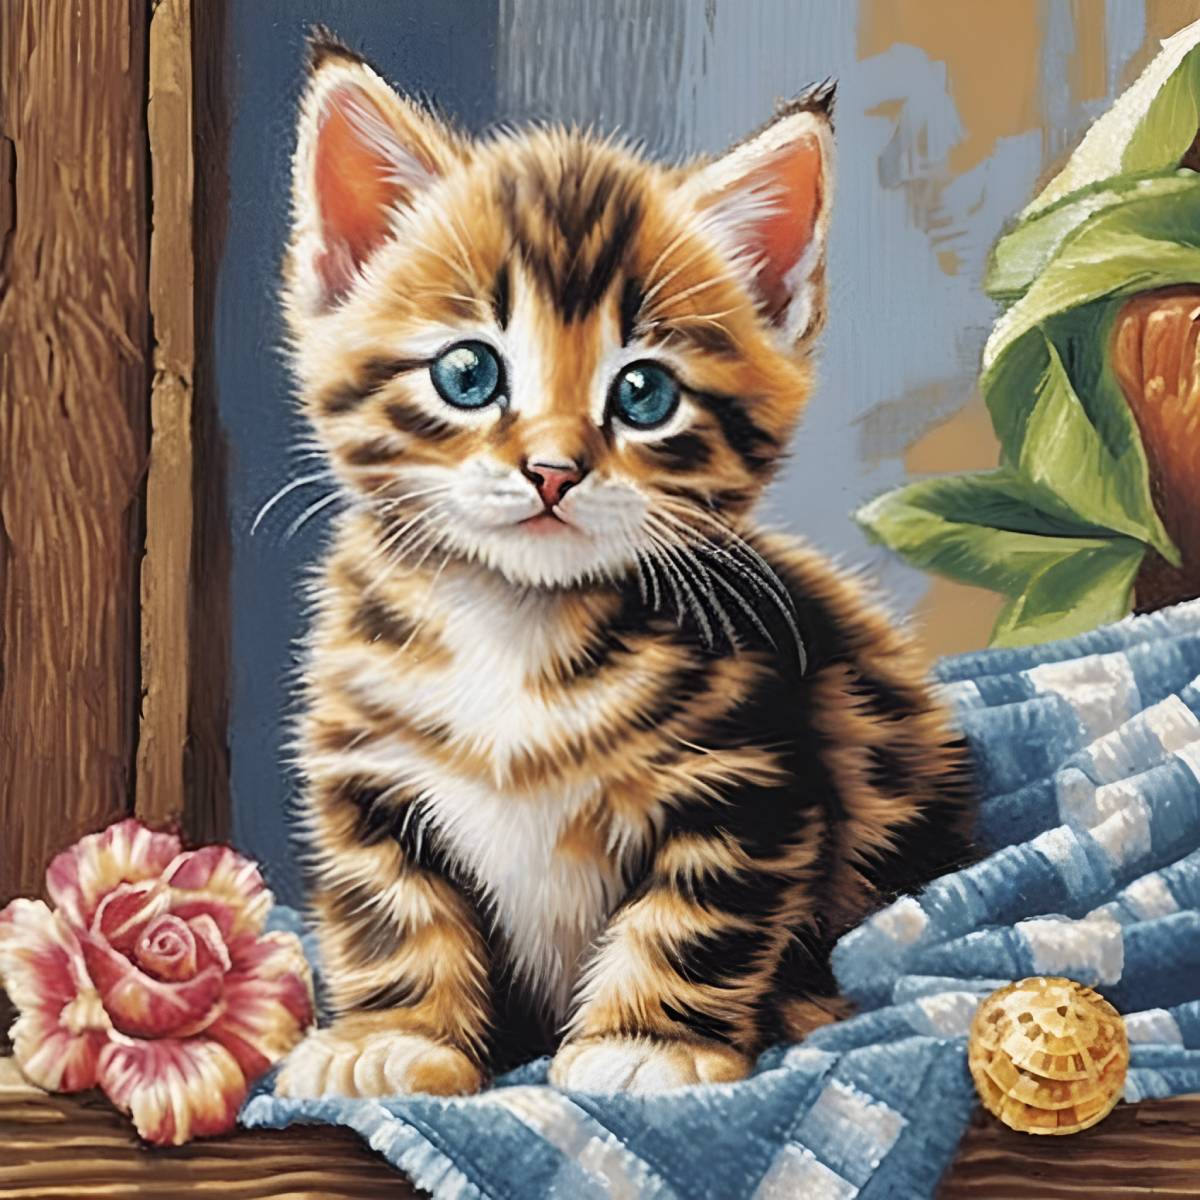 kits-de-pintura-de-diamantes-del-mago-de-diamantes-Animales-Gato-Precioso-Tabby-Kitten-original.jpg